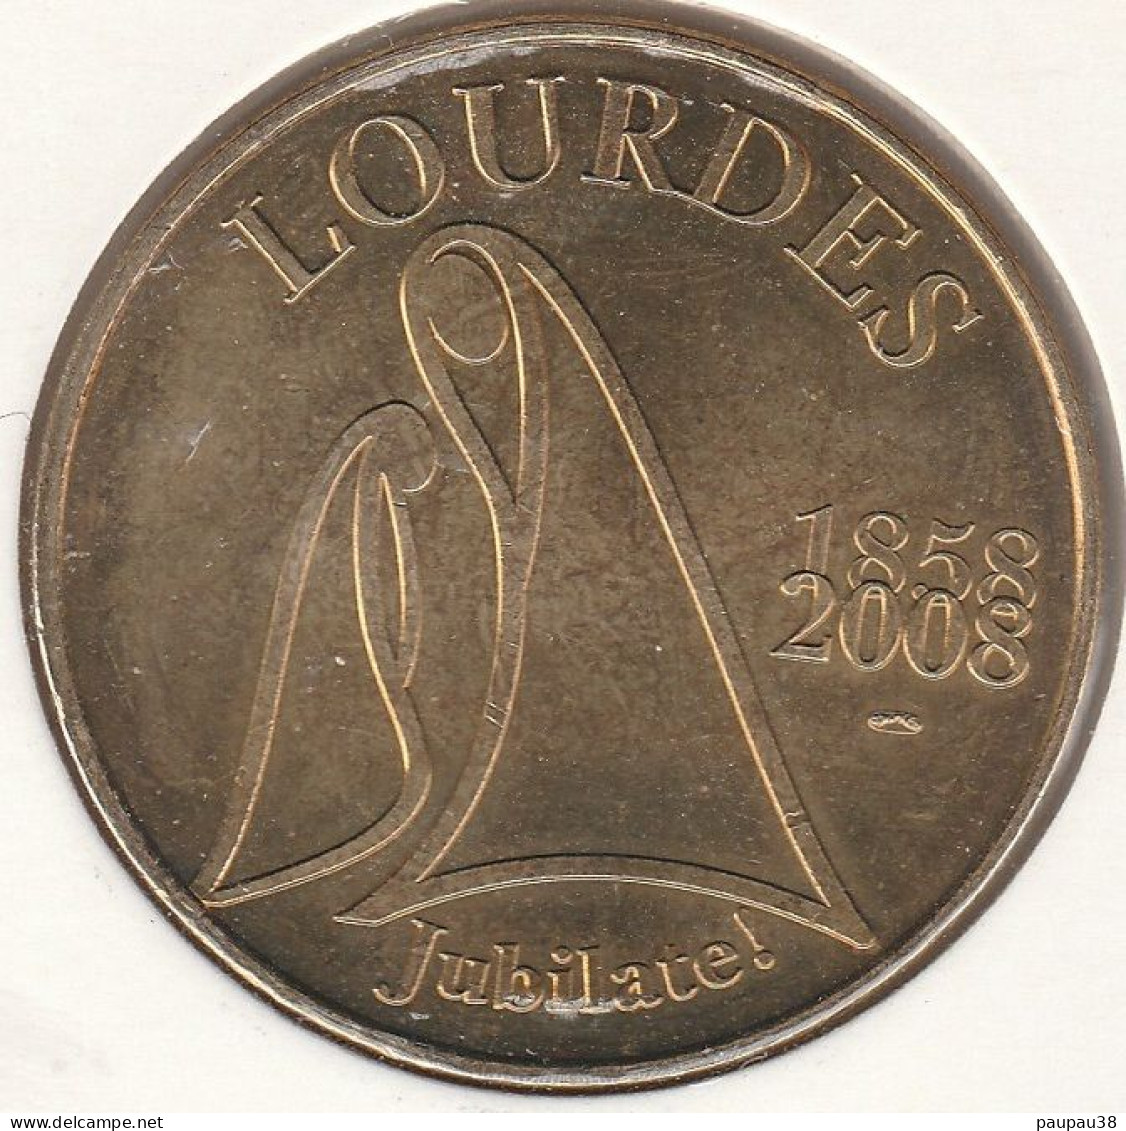 MONNAIE DE PARIS 2008 - 65 LOURDES Lourdes - Benoit XVI - Date 1858 / 2008 - 2008